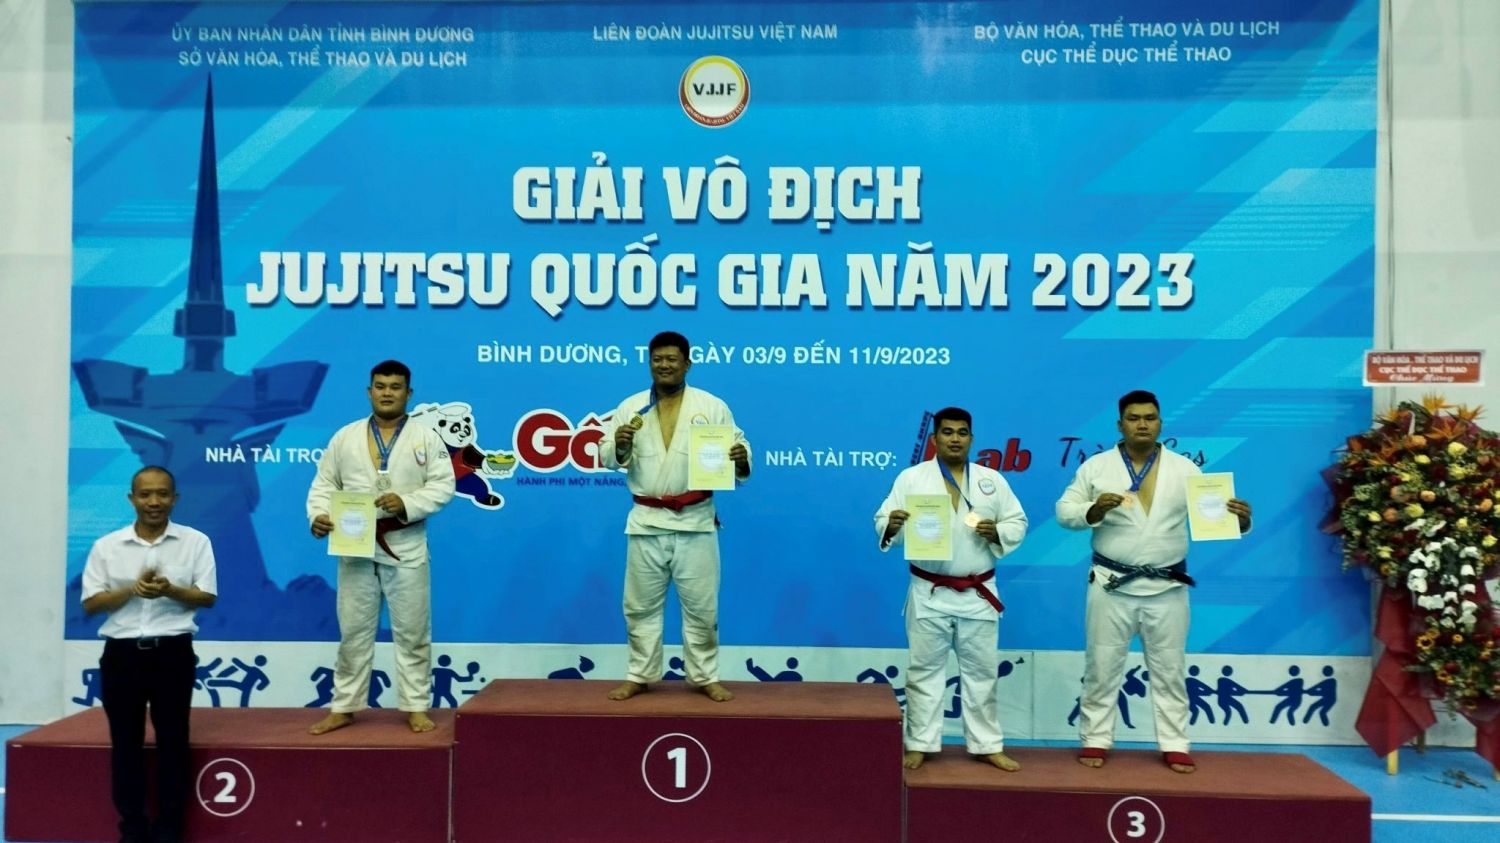 Giải Vô địch Jujitsu quốc gia năm 2023